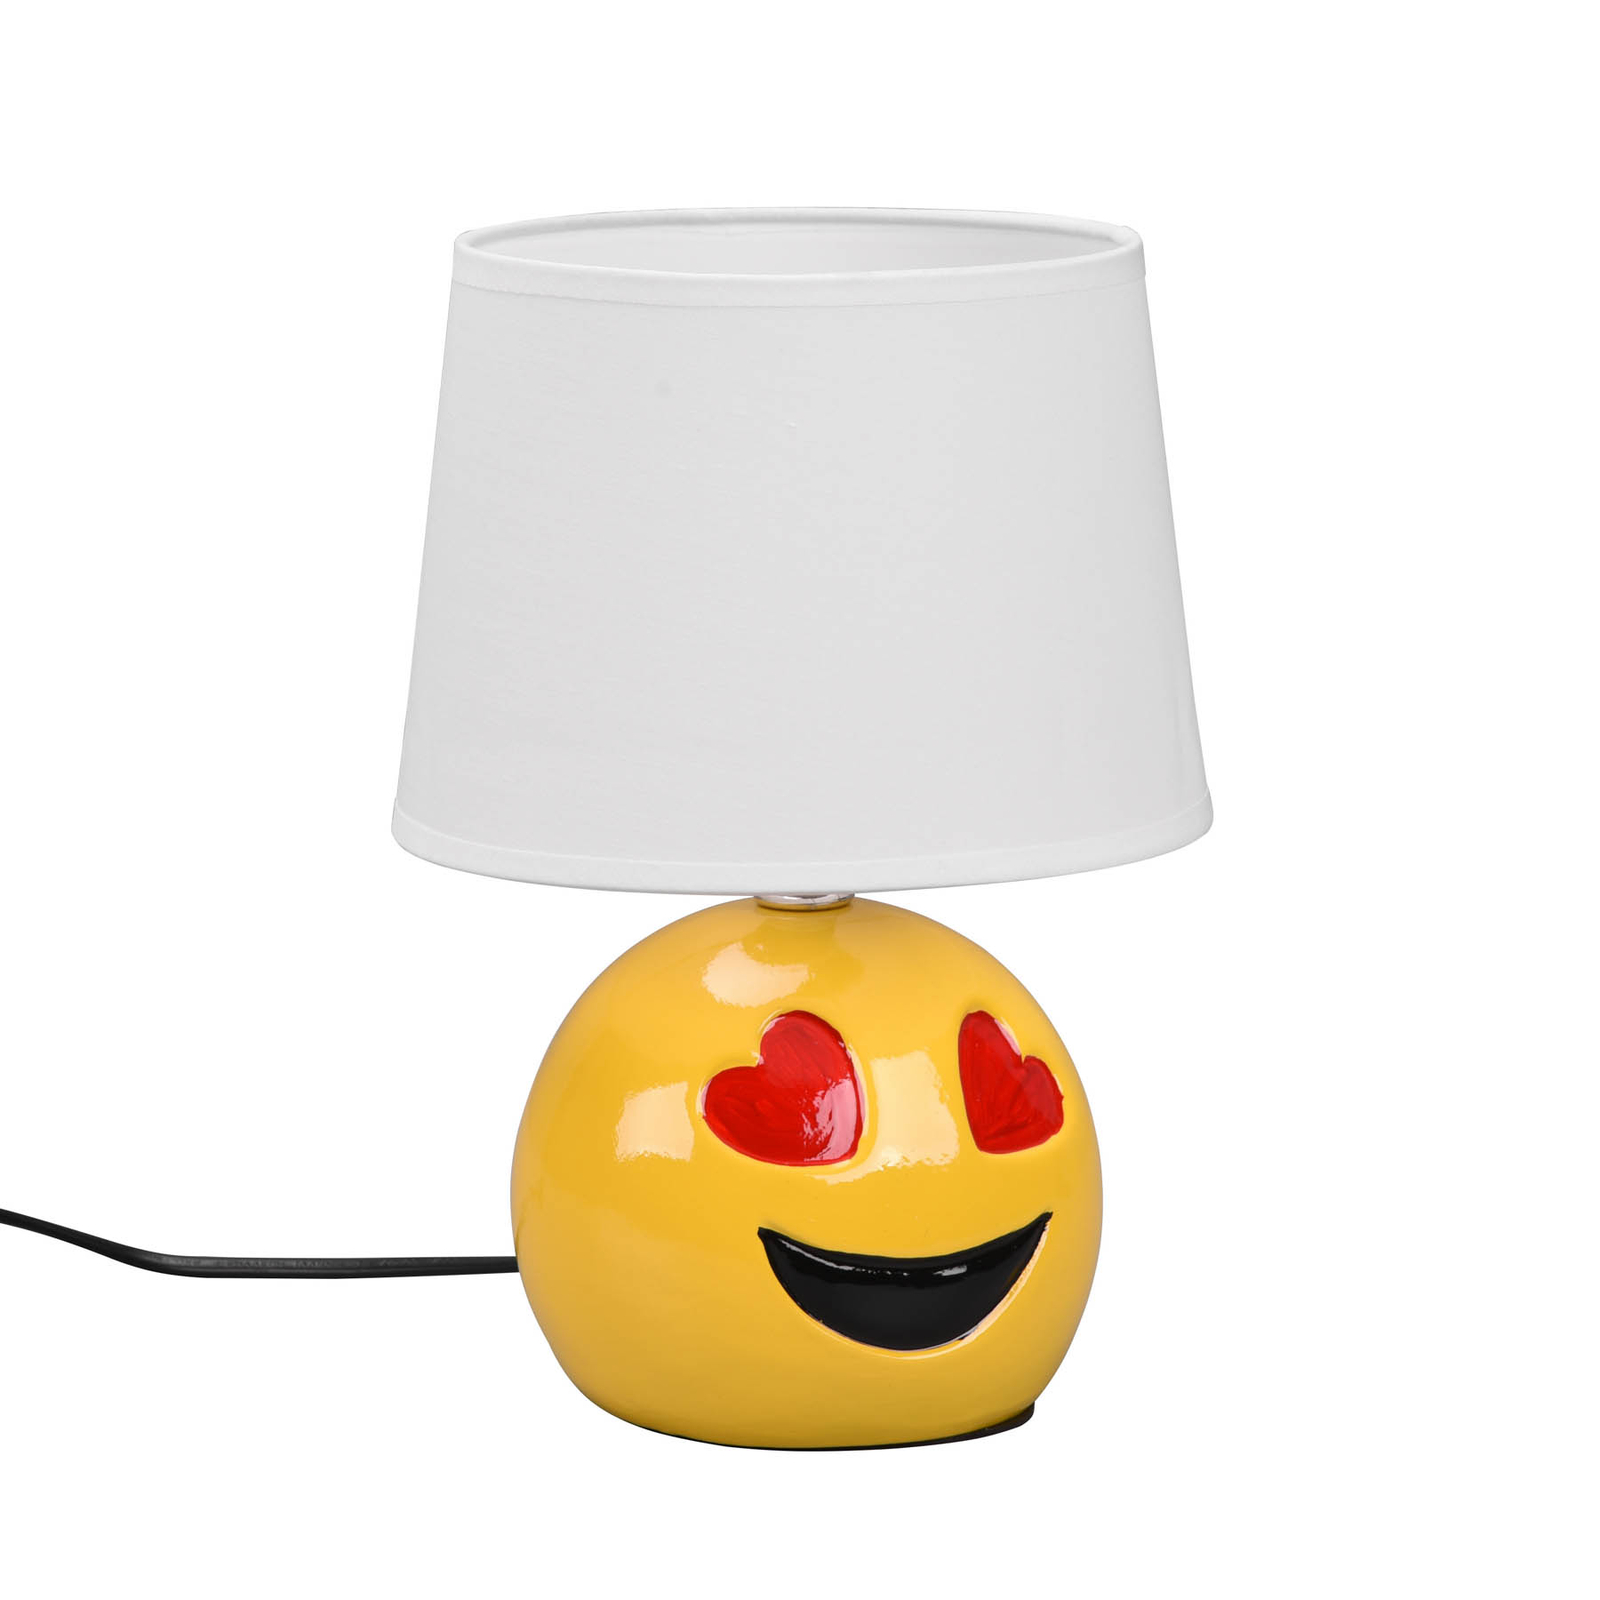 Lovely bordlampe med smiley, hvid stofskærm